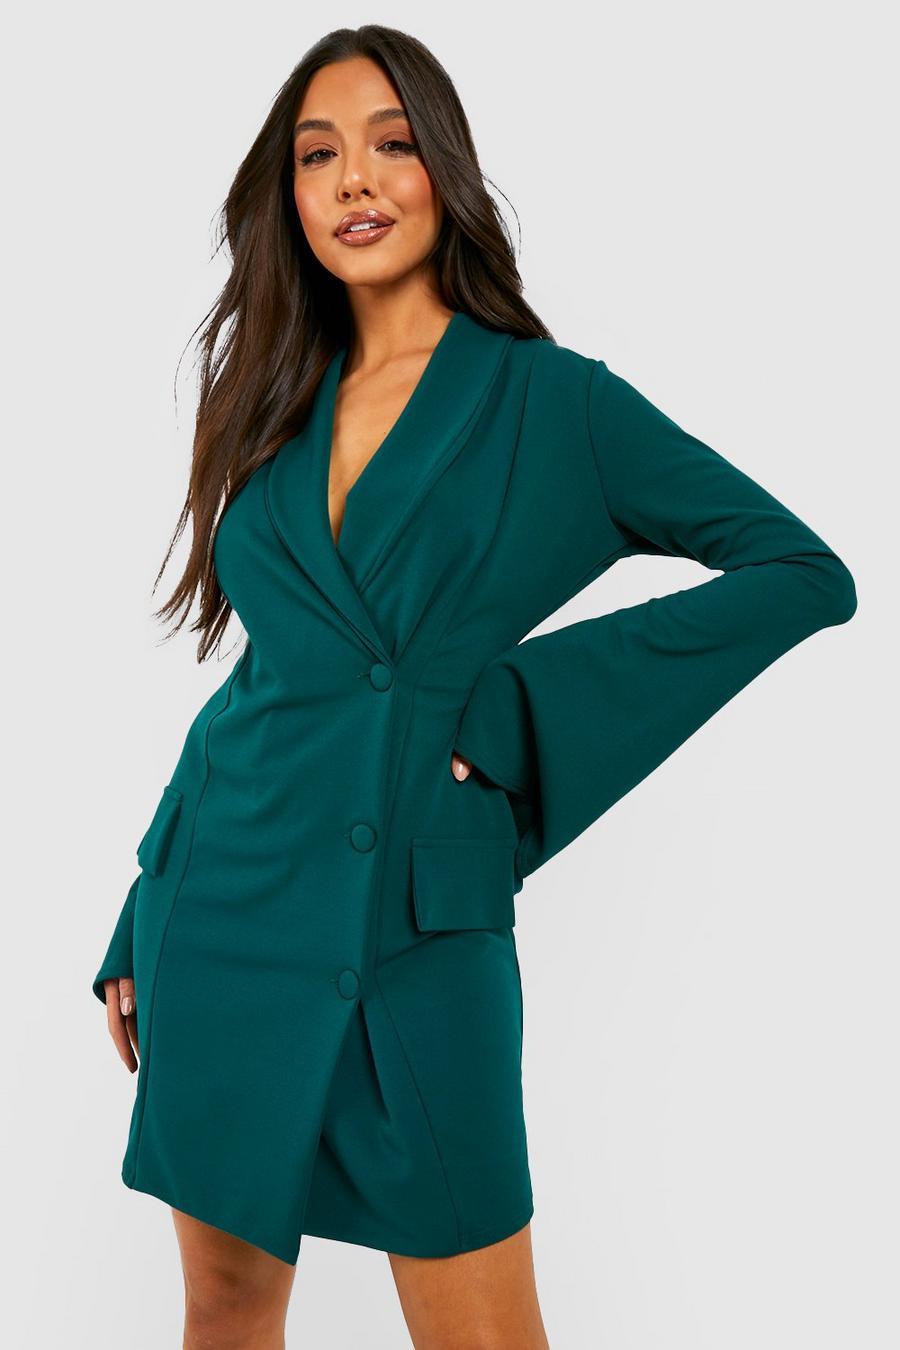 Bottle green vert Flared Sleeve Tailored Blazer Mini Dress